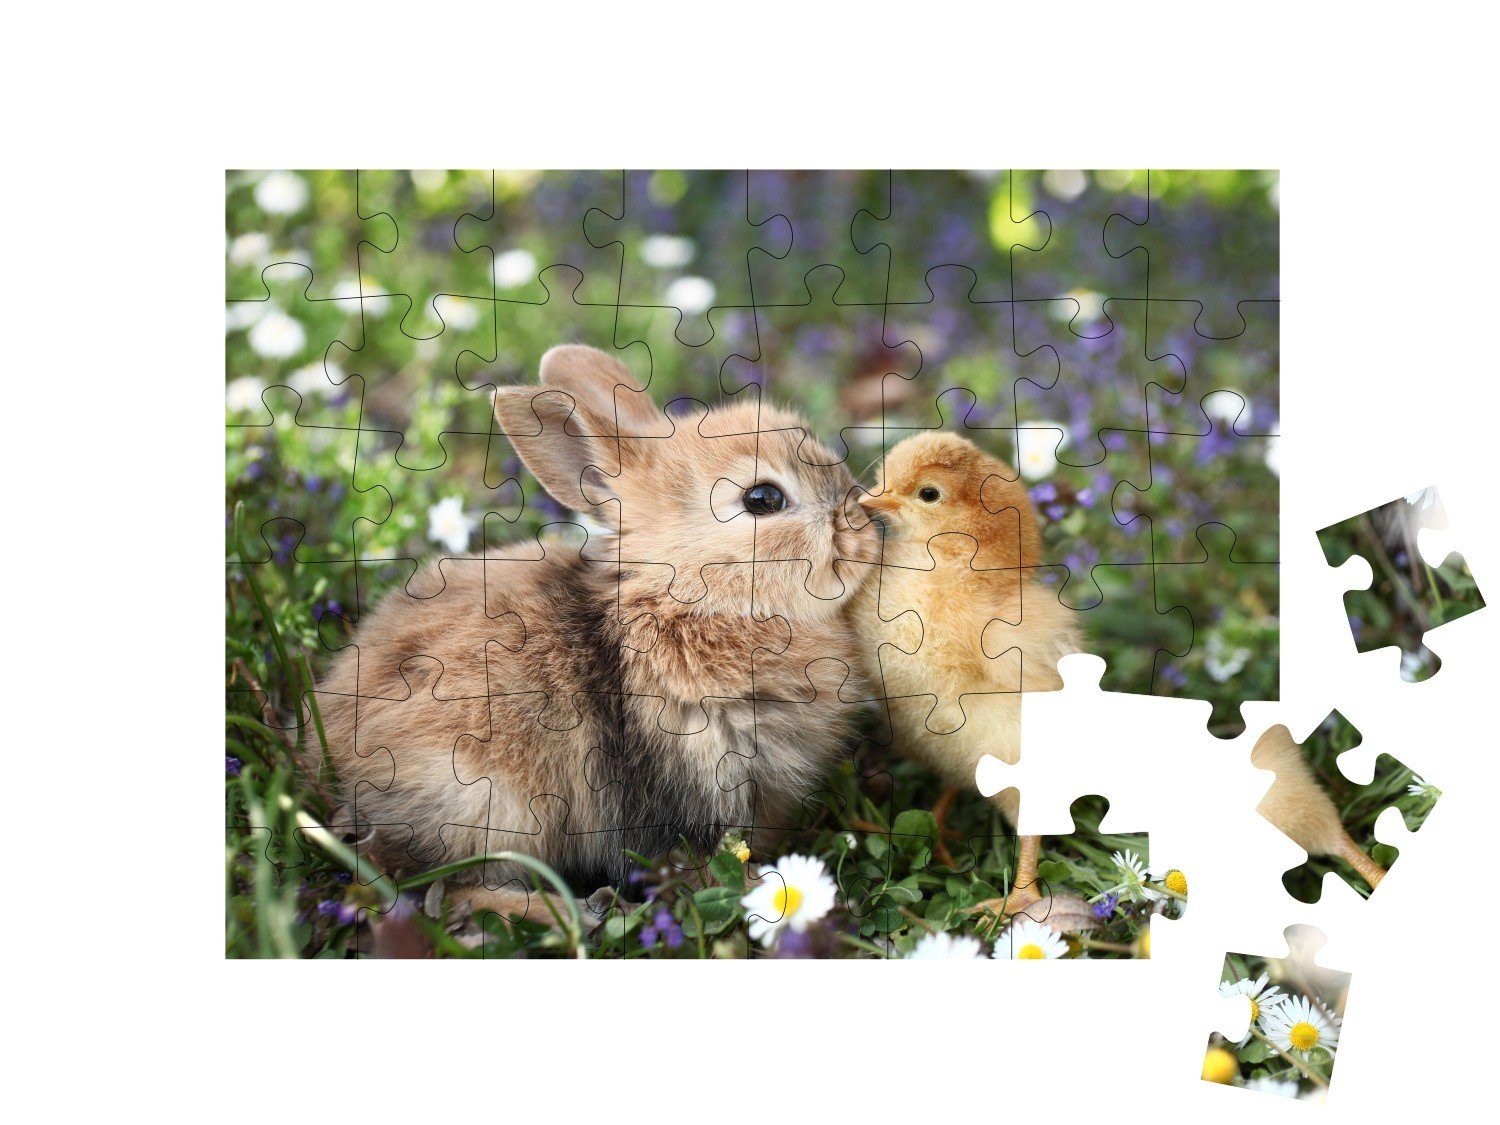 puzzleYOU Puzzle Beste Freunde: Kleines 48 und puzzleYOU-Kollektionen Kaninchen Kaninchen, Puzzleteile, Bauernhof-Tiere Küken